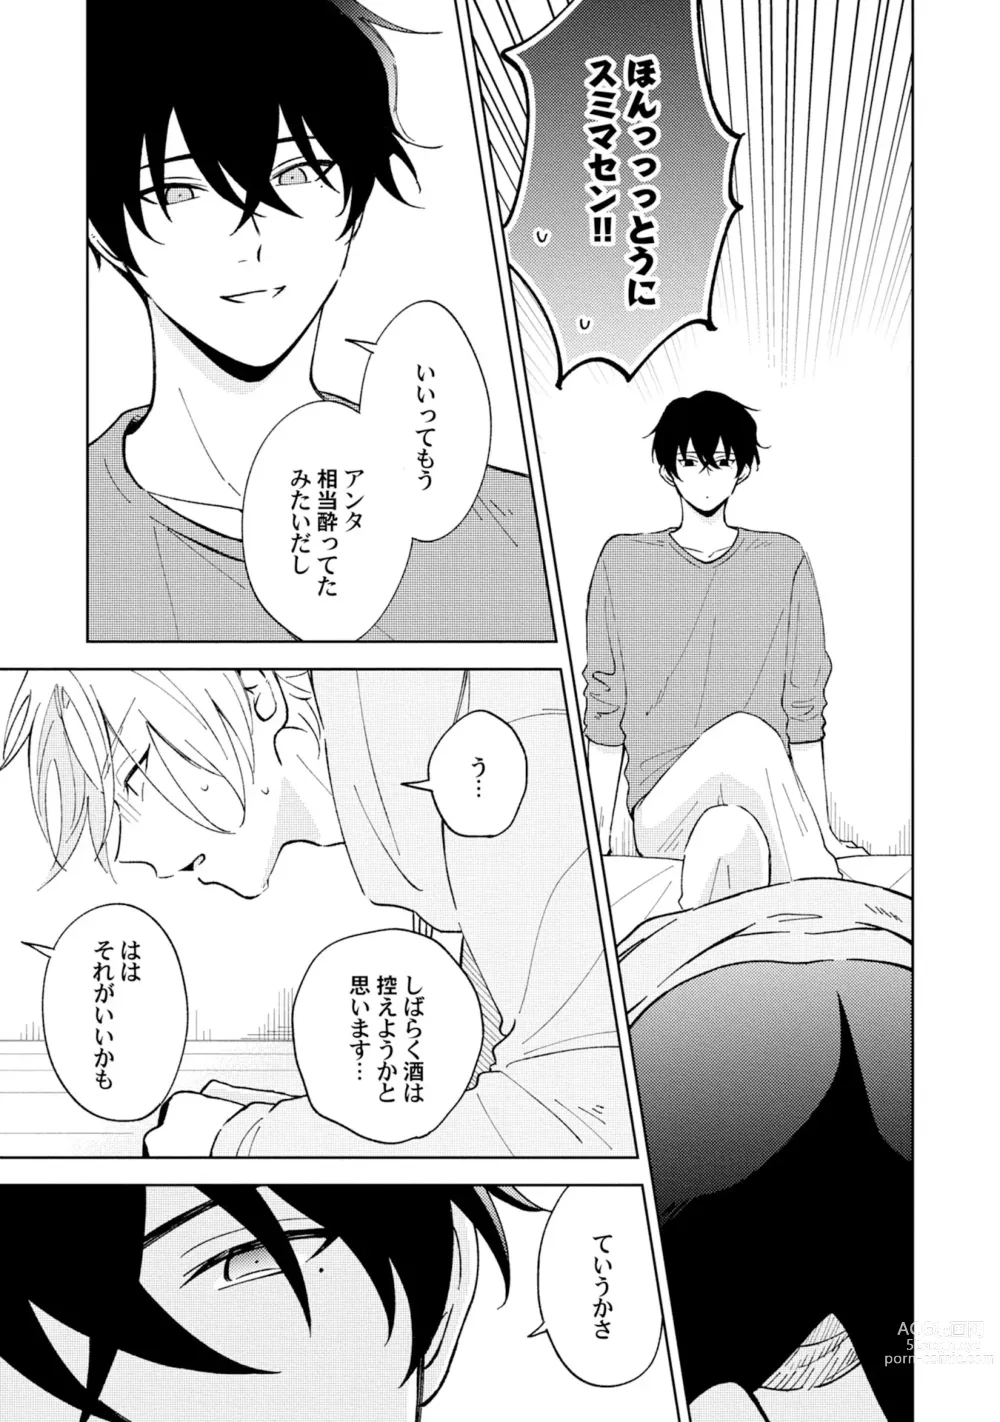 Page 3 of manga Toho 3-byou no Trouble Love Room 2